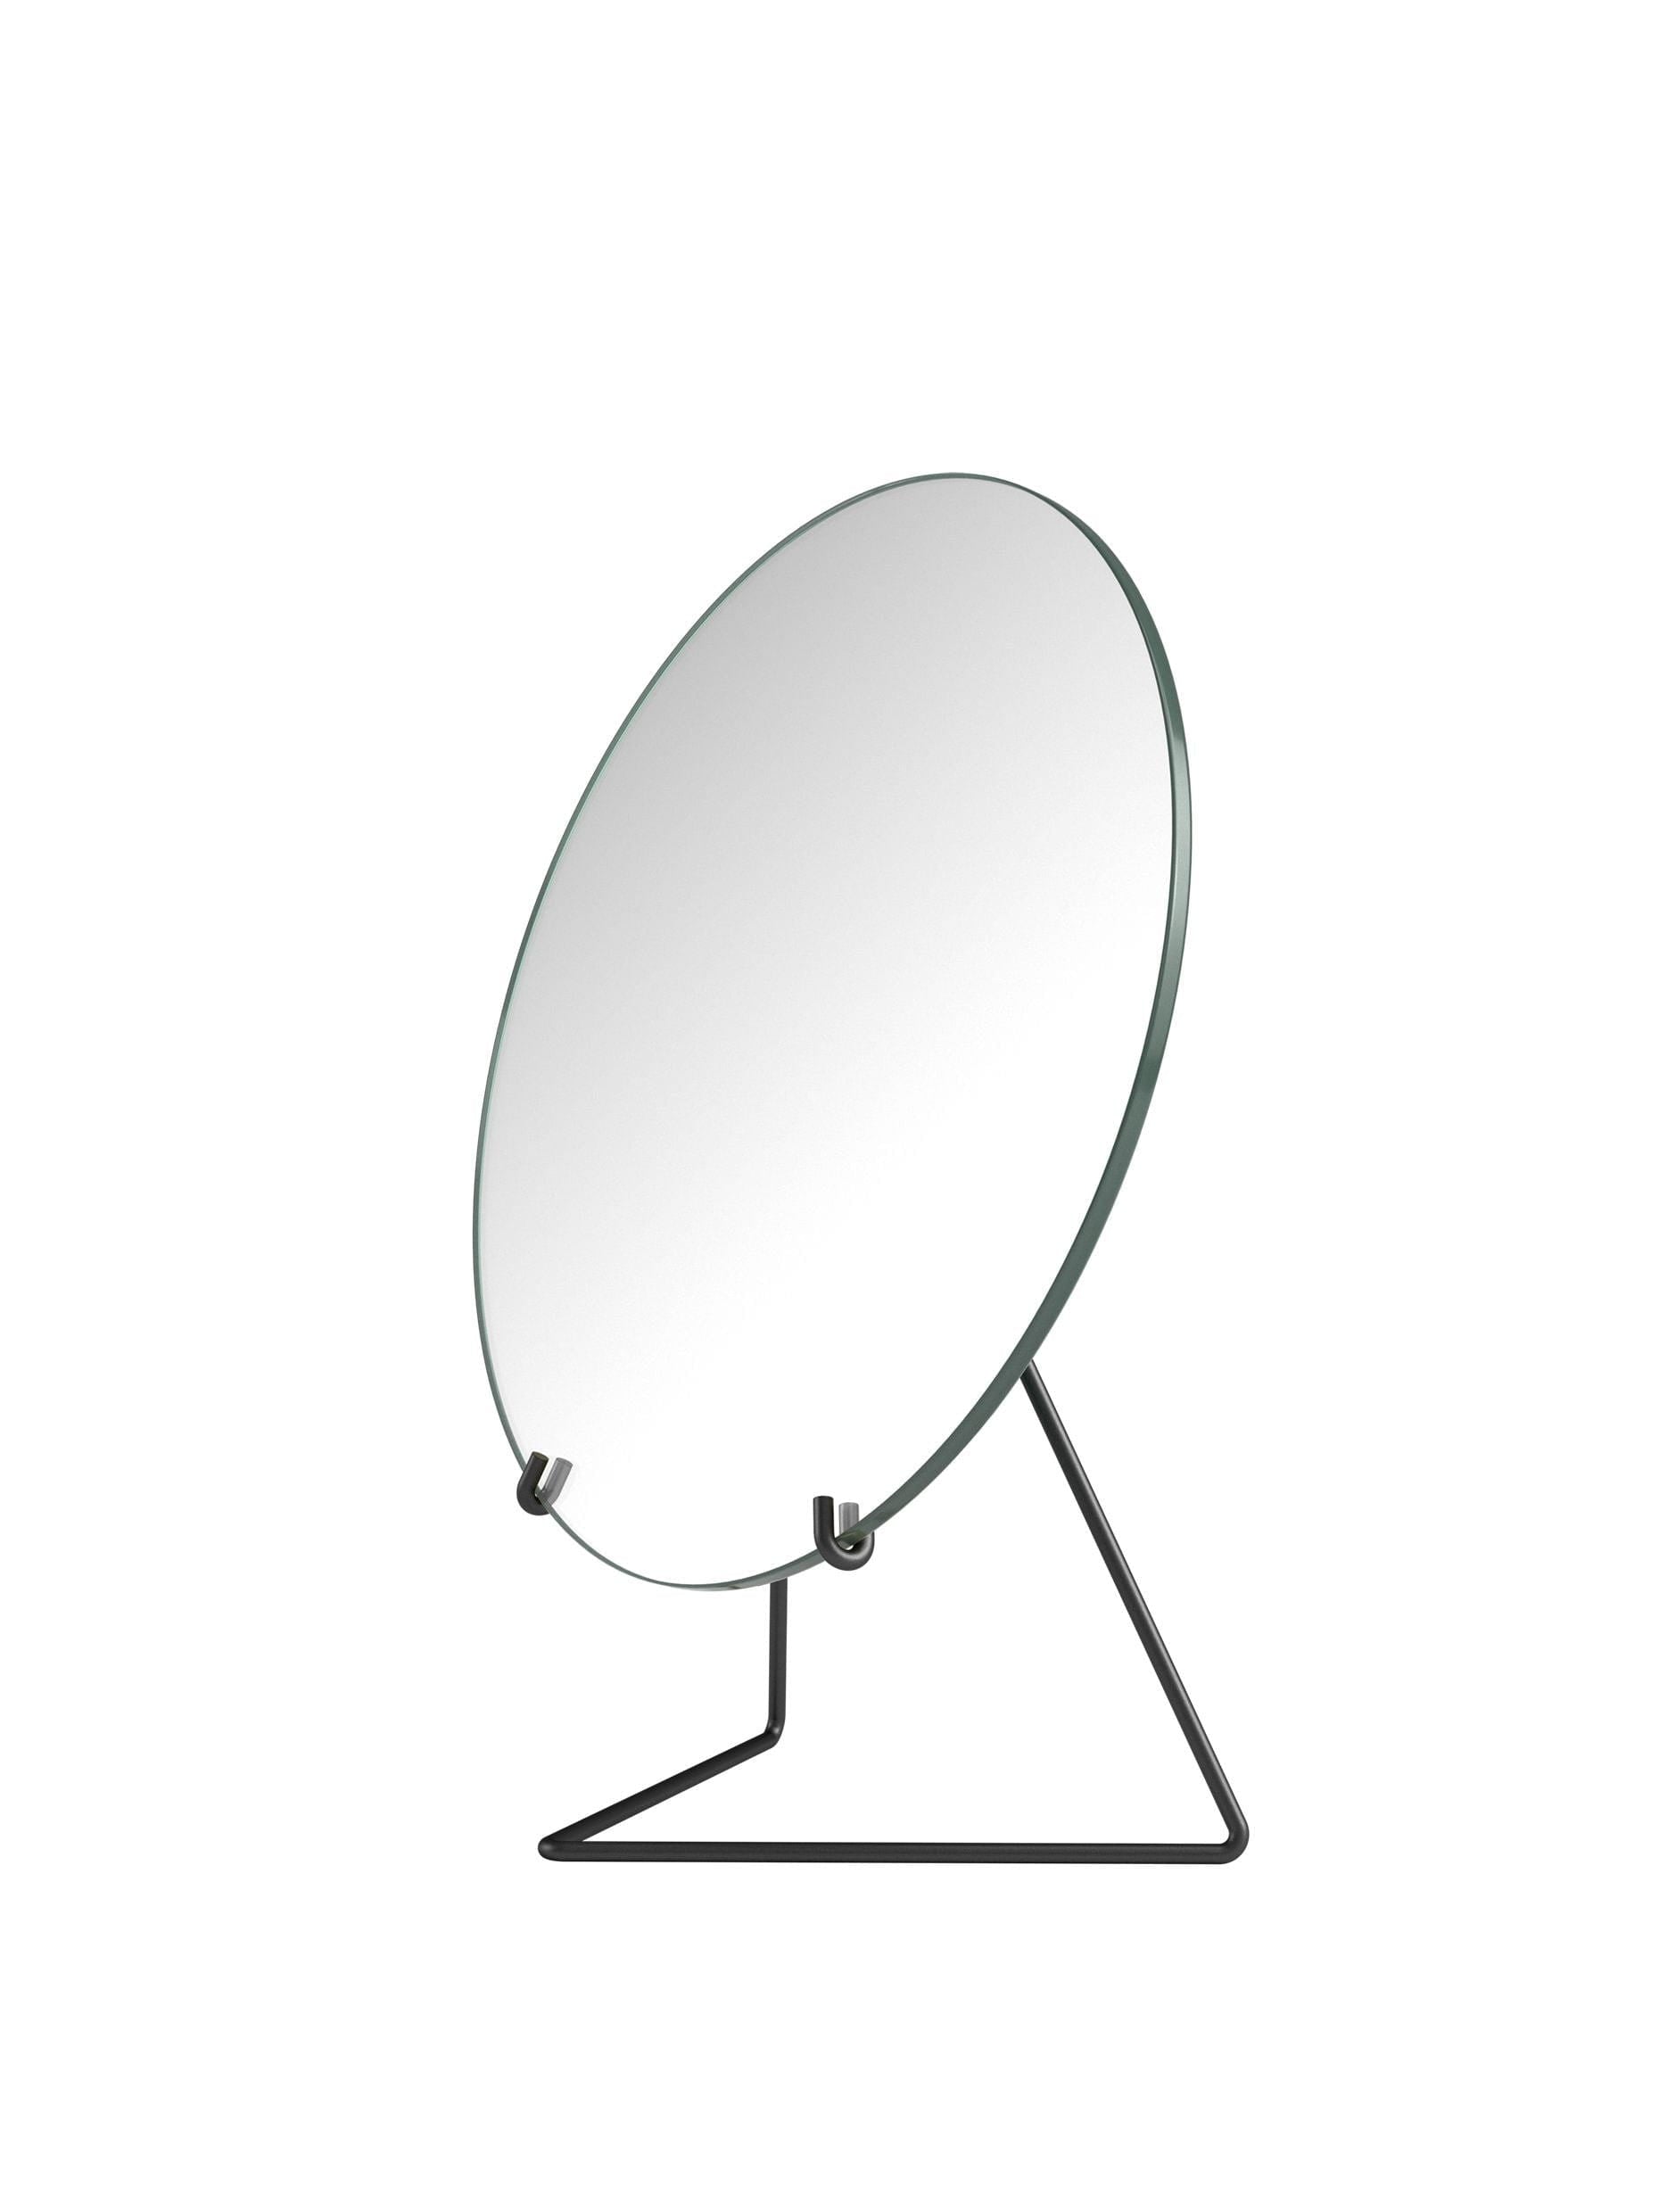 Moebe stående speil Ø30 cm, svart